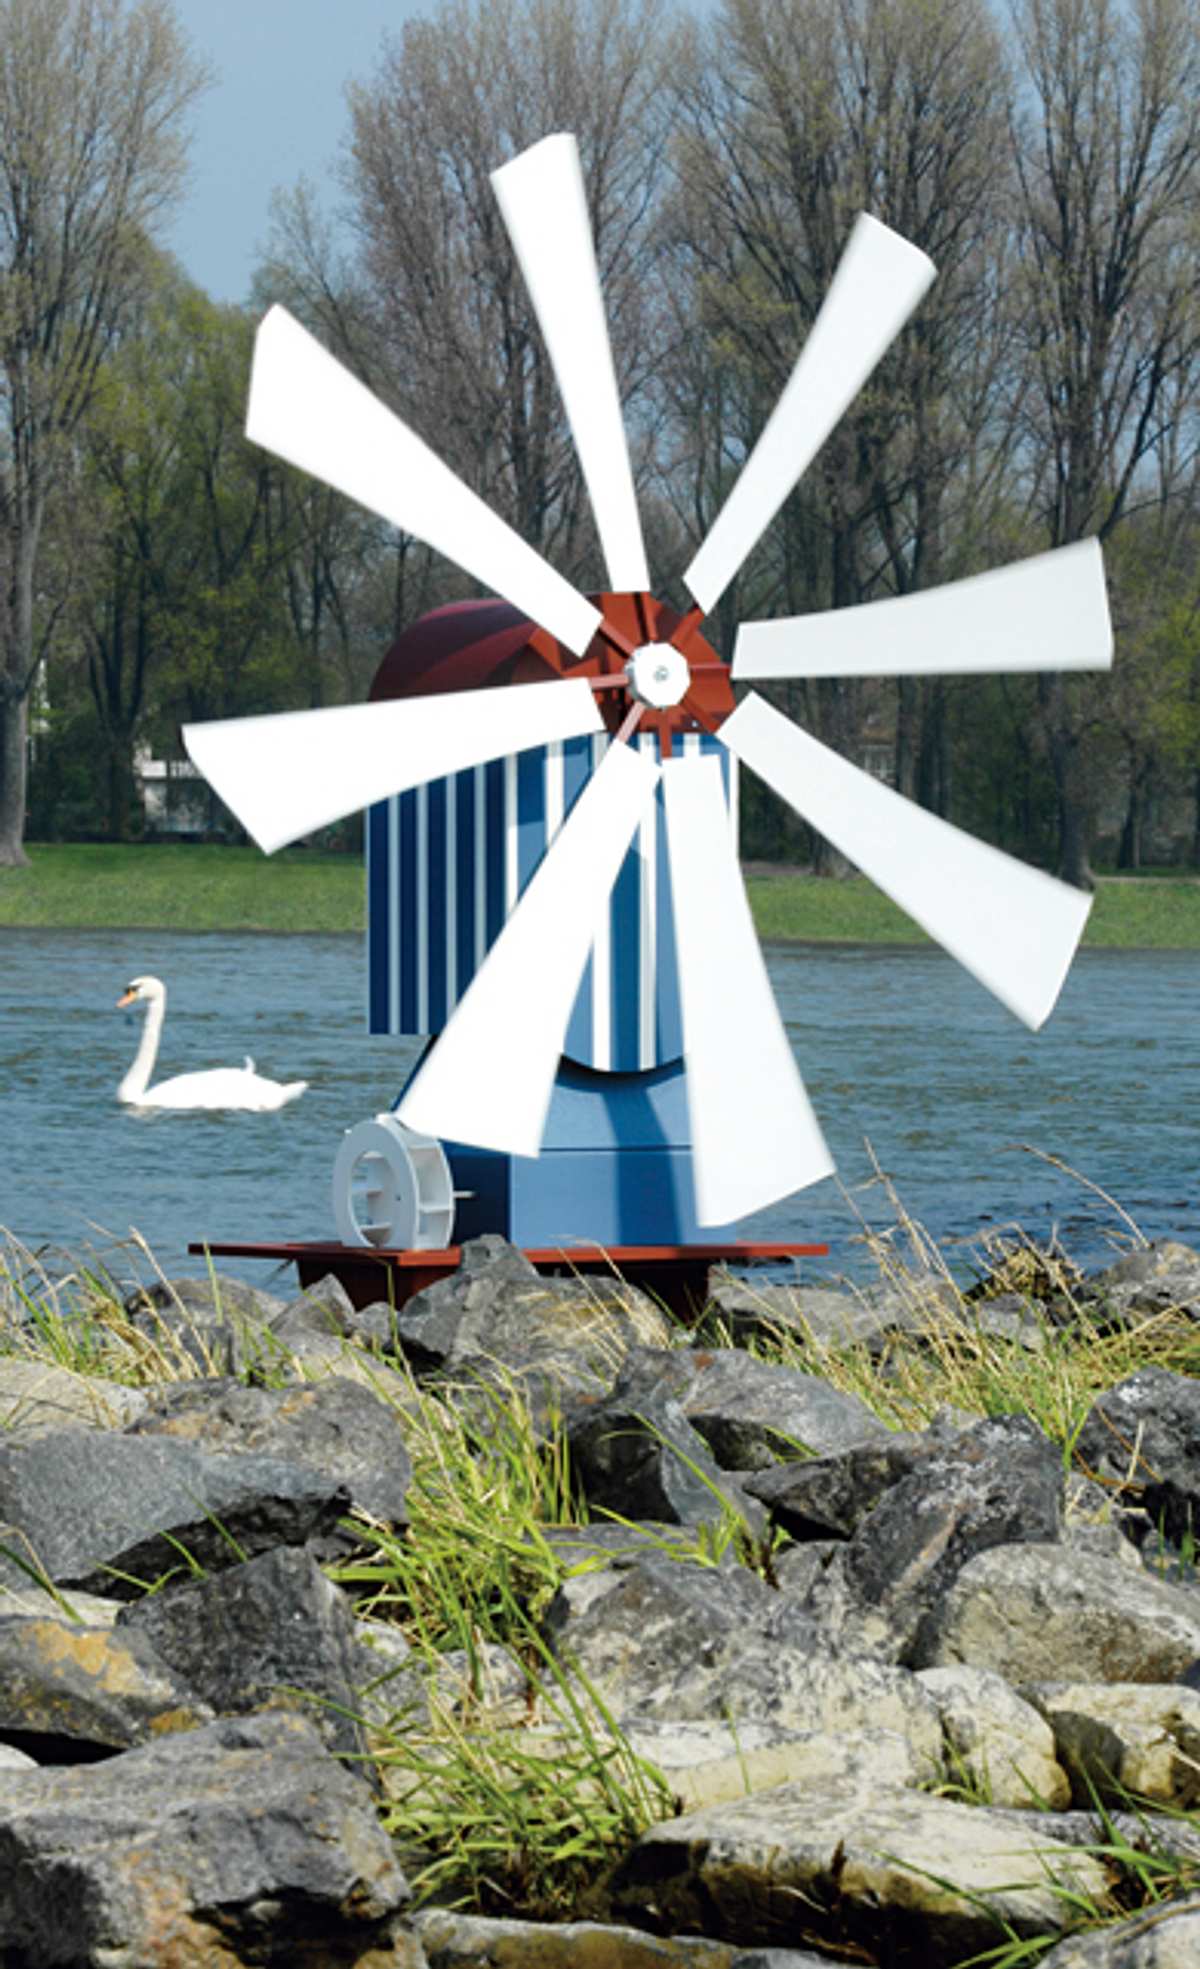 Bauanleitung: Windmühle bauen